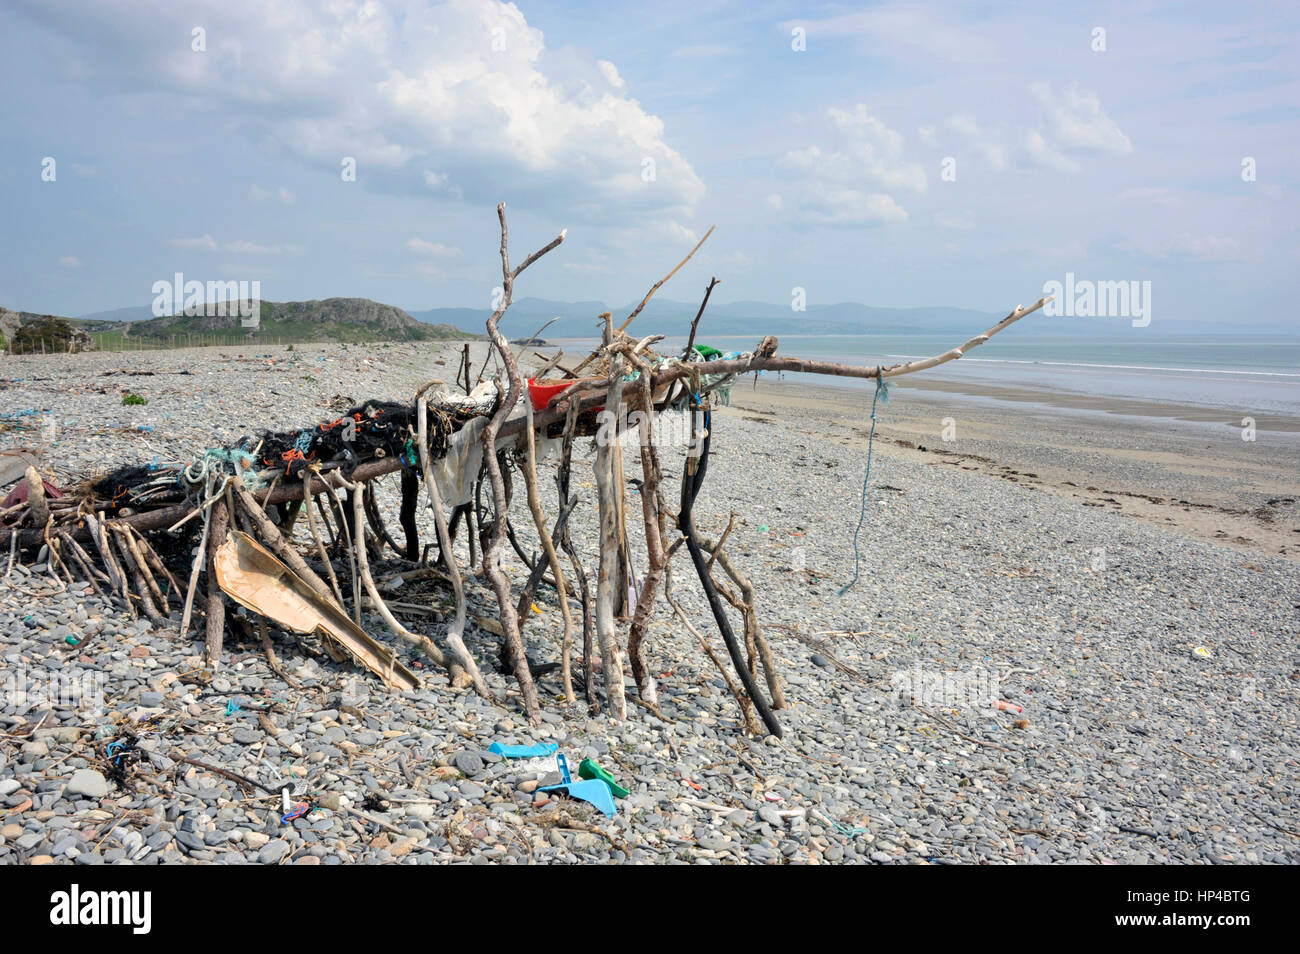 Strand Kunstskulptur oder Unterstand hergestellt aus Treibholz, Müll und Strandgut am Ufer Black Rock Sand-Strand in der Nähe der walisischen Dorf Morfa angespült Stockfoto